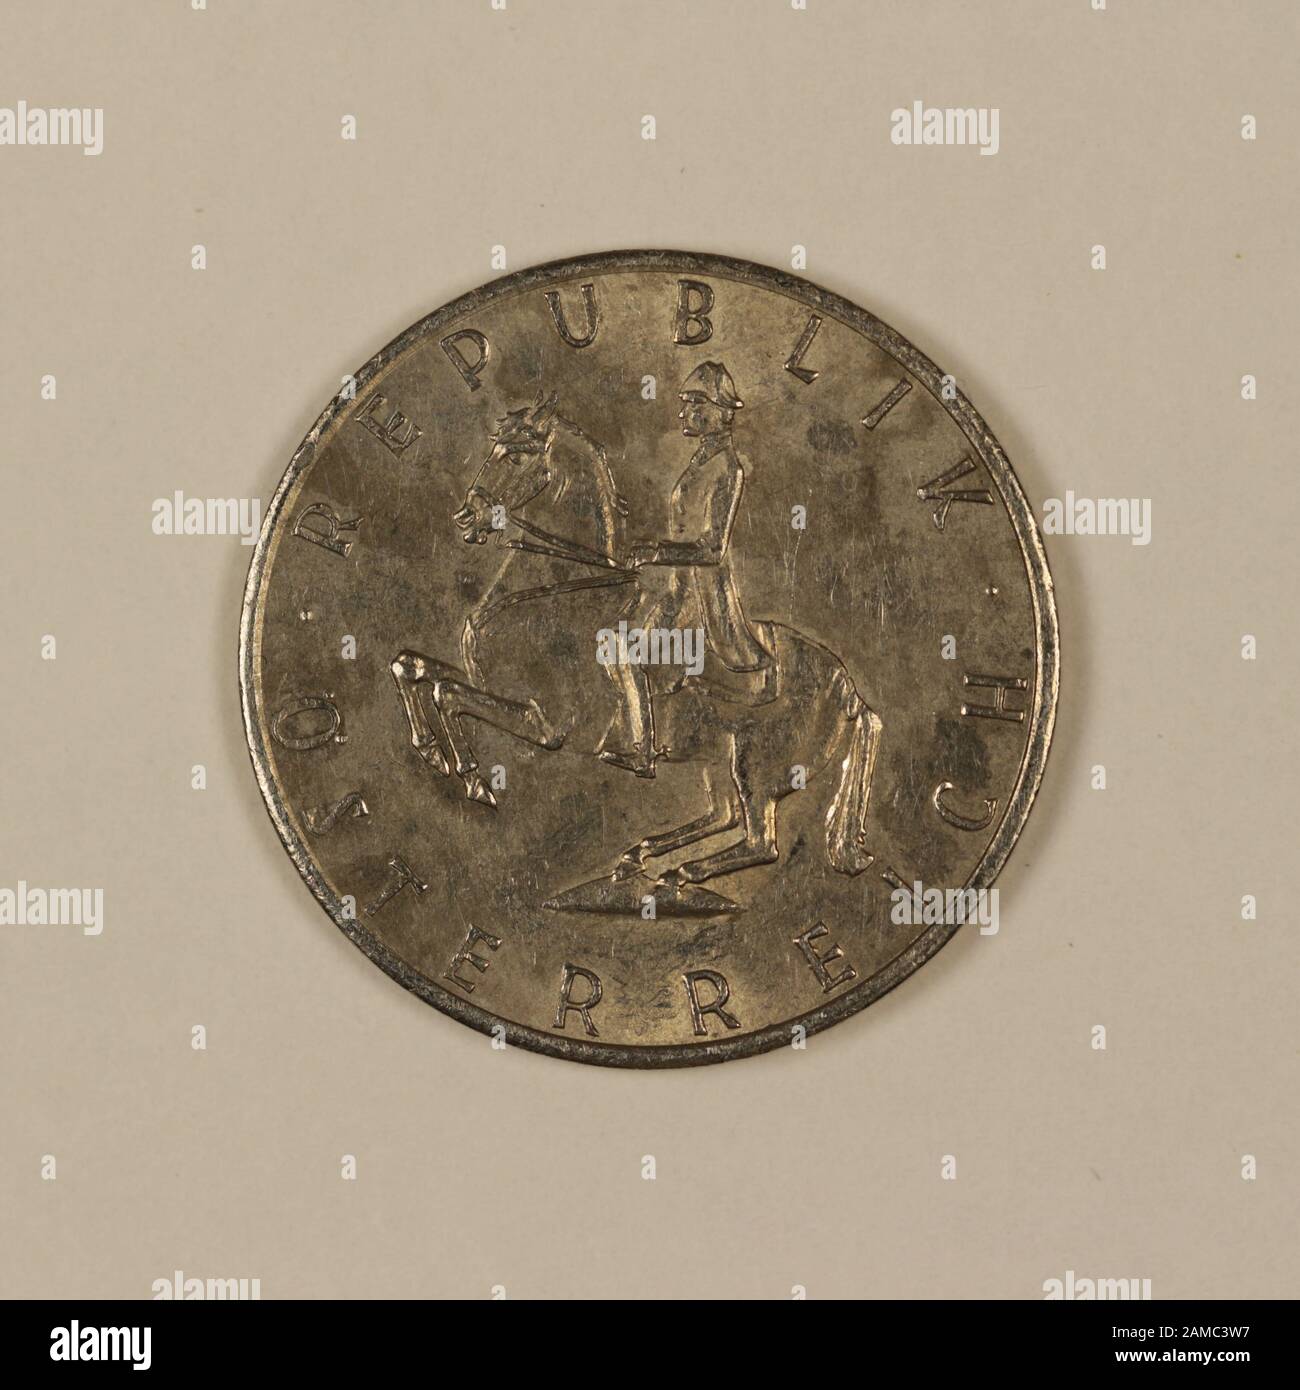 Rückseite einer ehemaligen Österreichischen 5 Schilling Münze Stock Photo -  Alamy